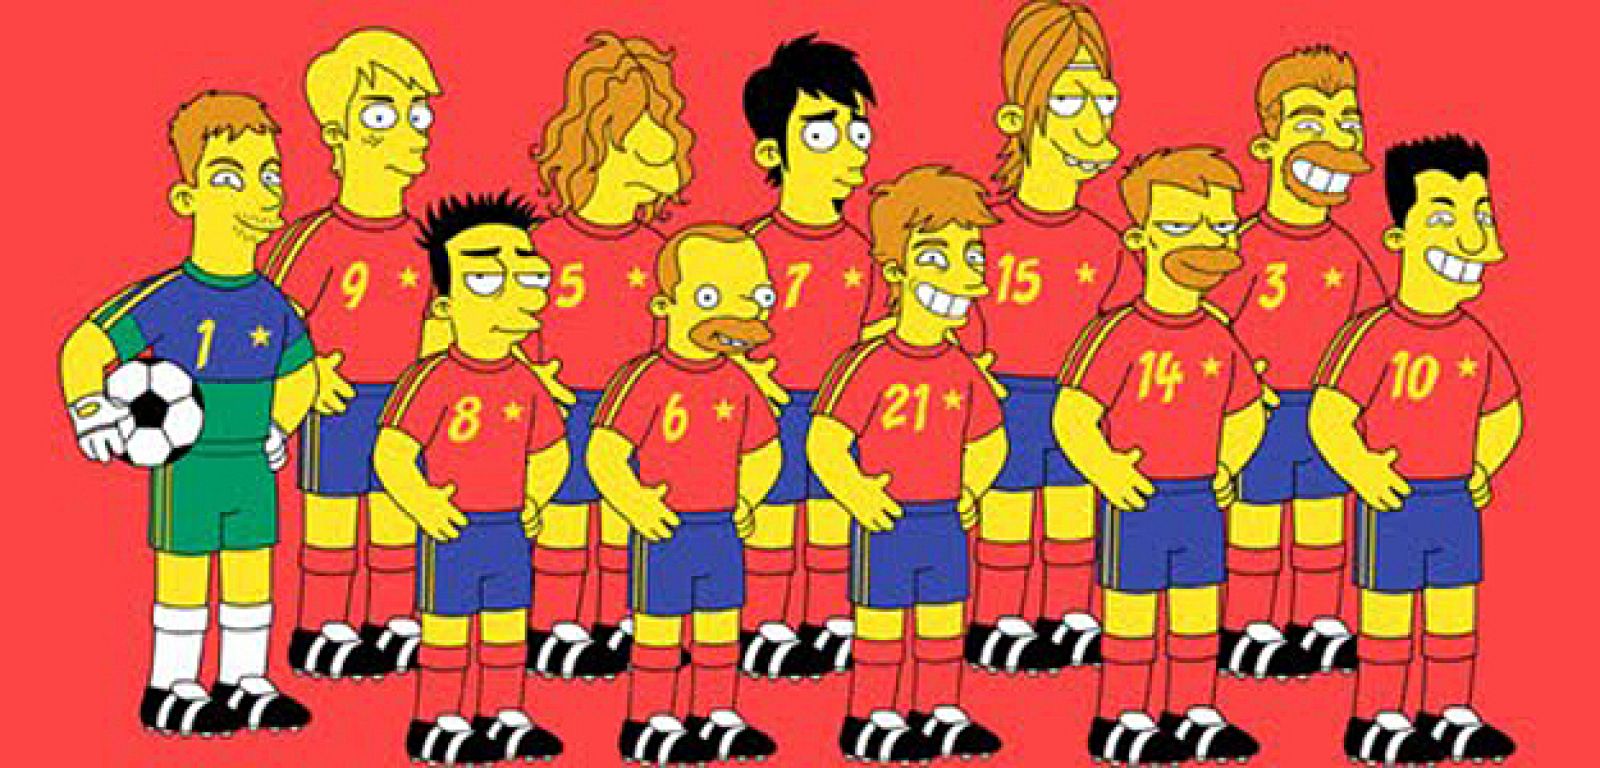 El dibujo que se ha filtrado en internet caracteriza a los jugadores de la selección española como personajes de los Simpson.